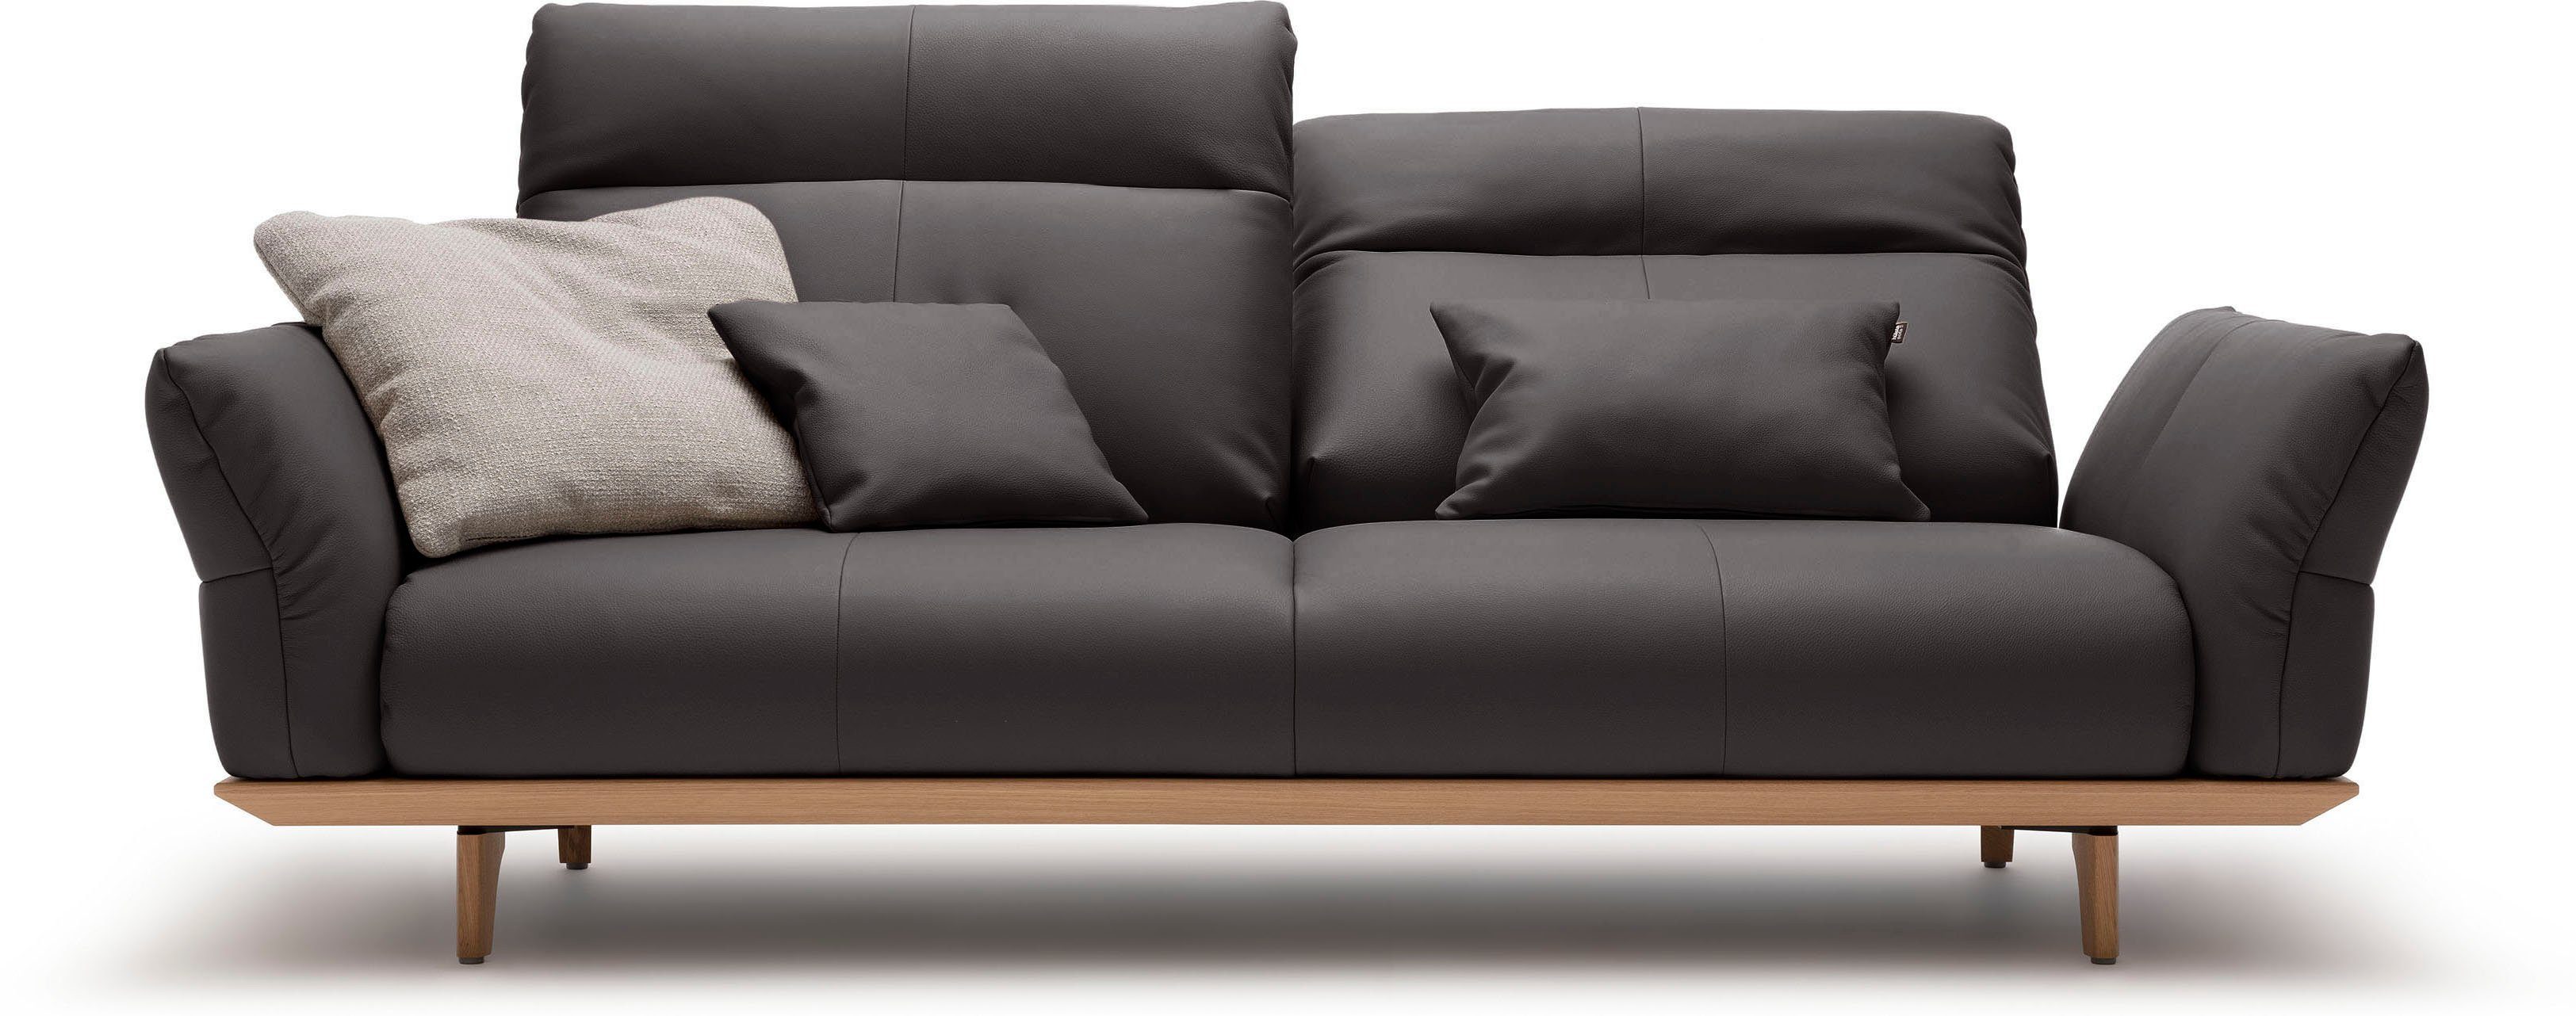 3-Sitzer natur, Breite Füße Sockel Eiche cm hülsta sofa 208 in hs.460, Eiche,